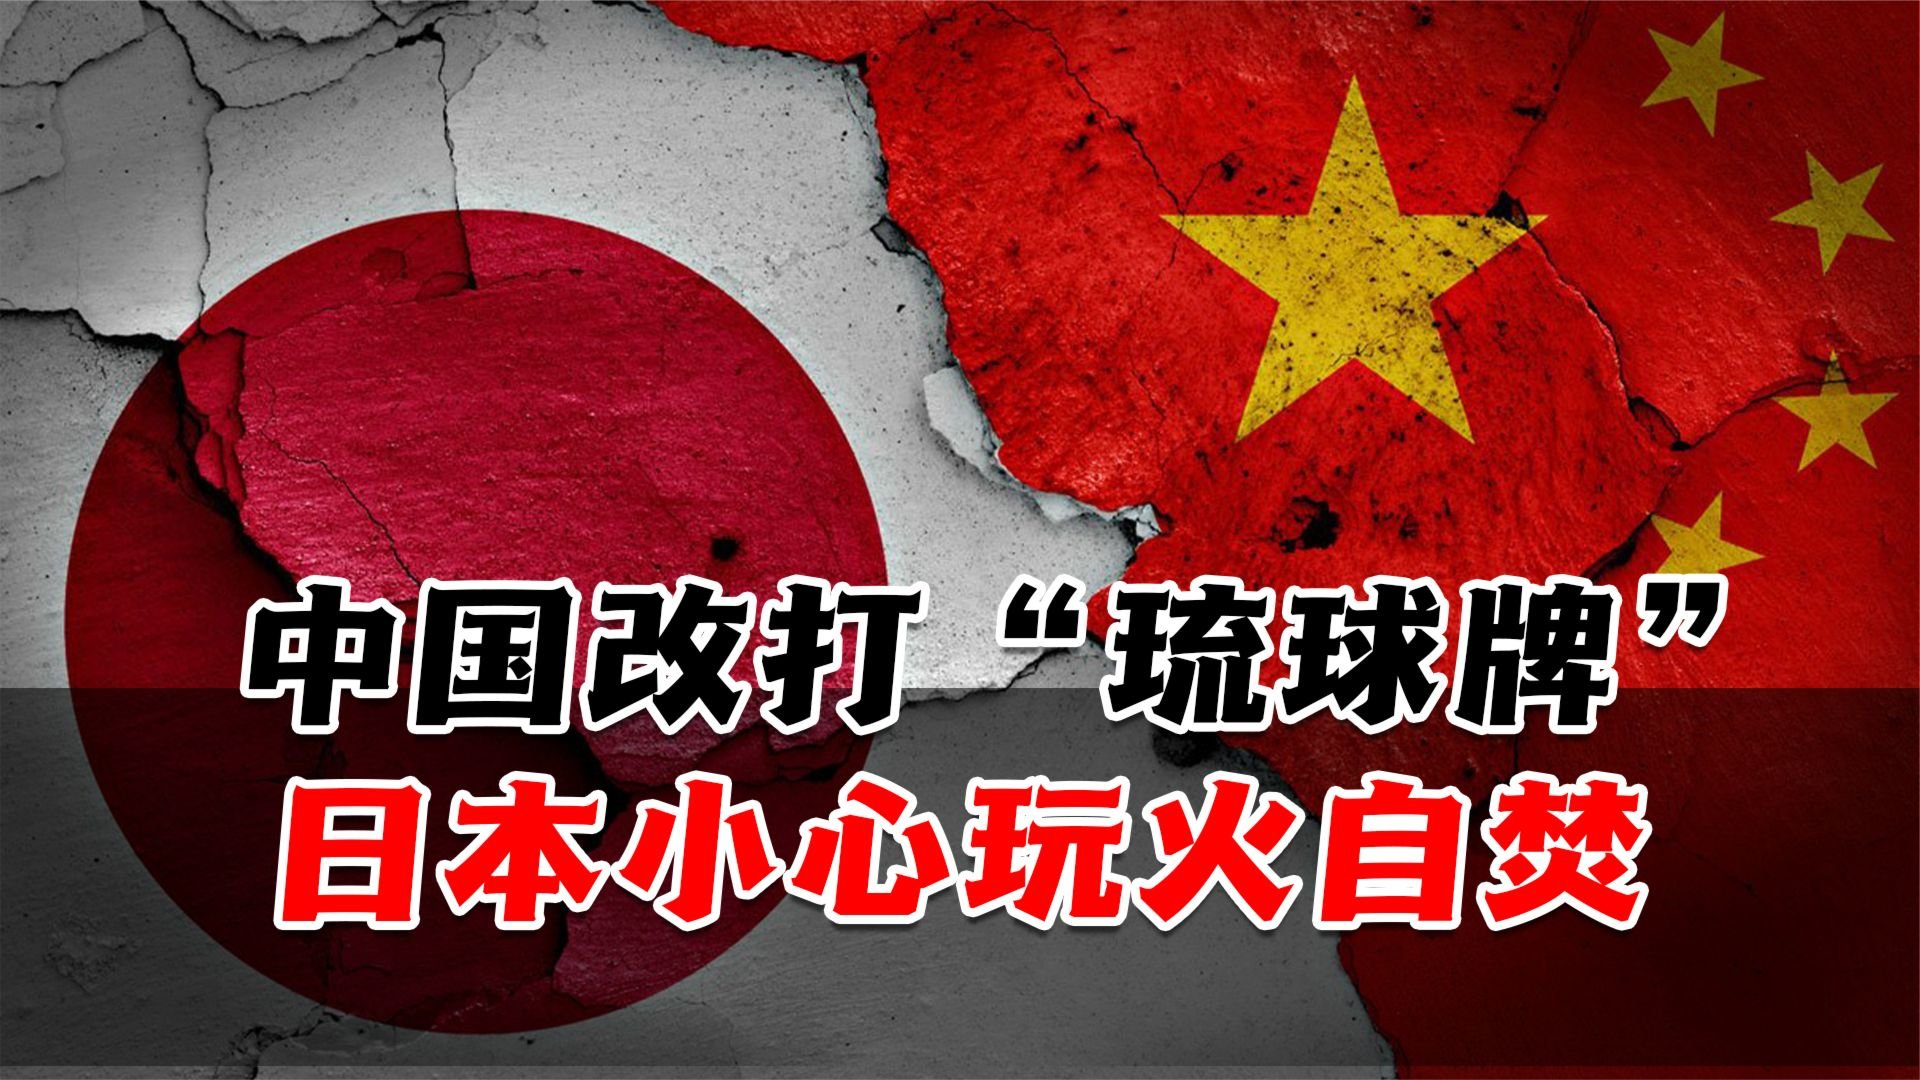 中国用“琉球牌”敲打日本，若其仍执意搅乱台海，小心玩火自焚